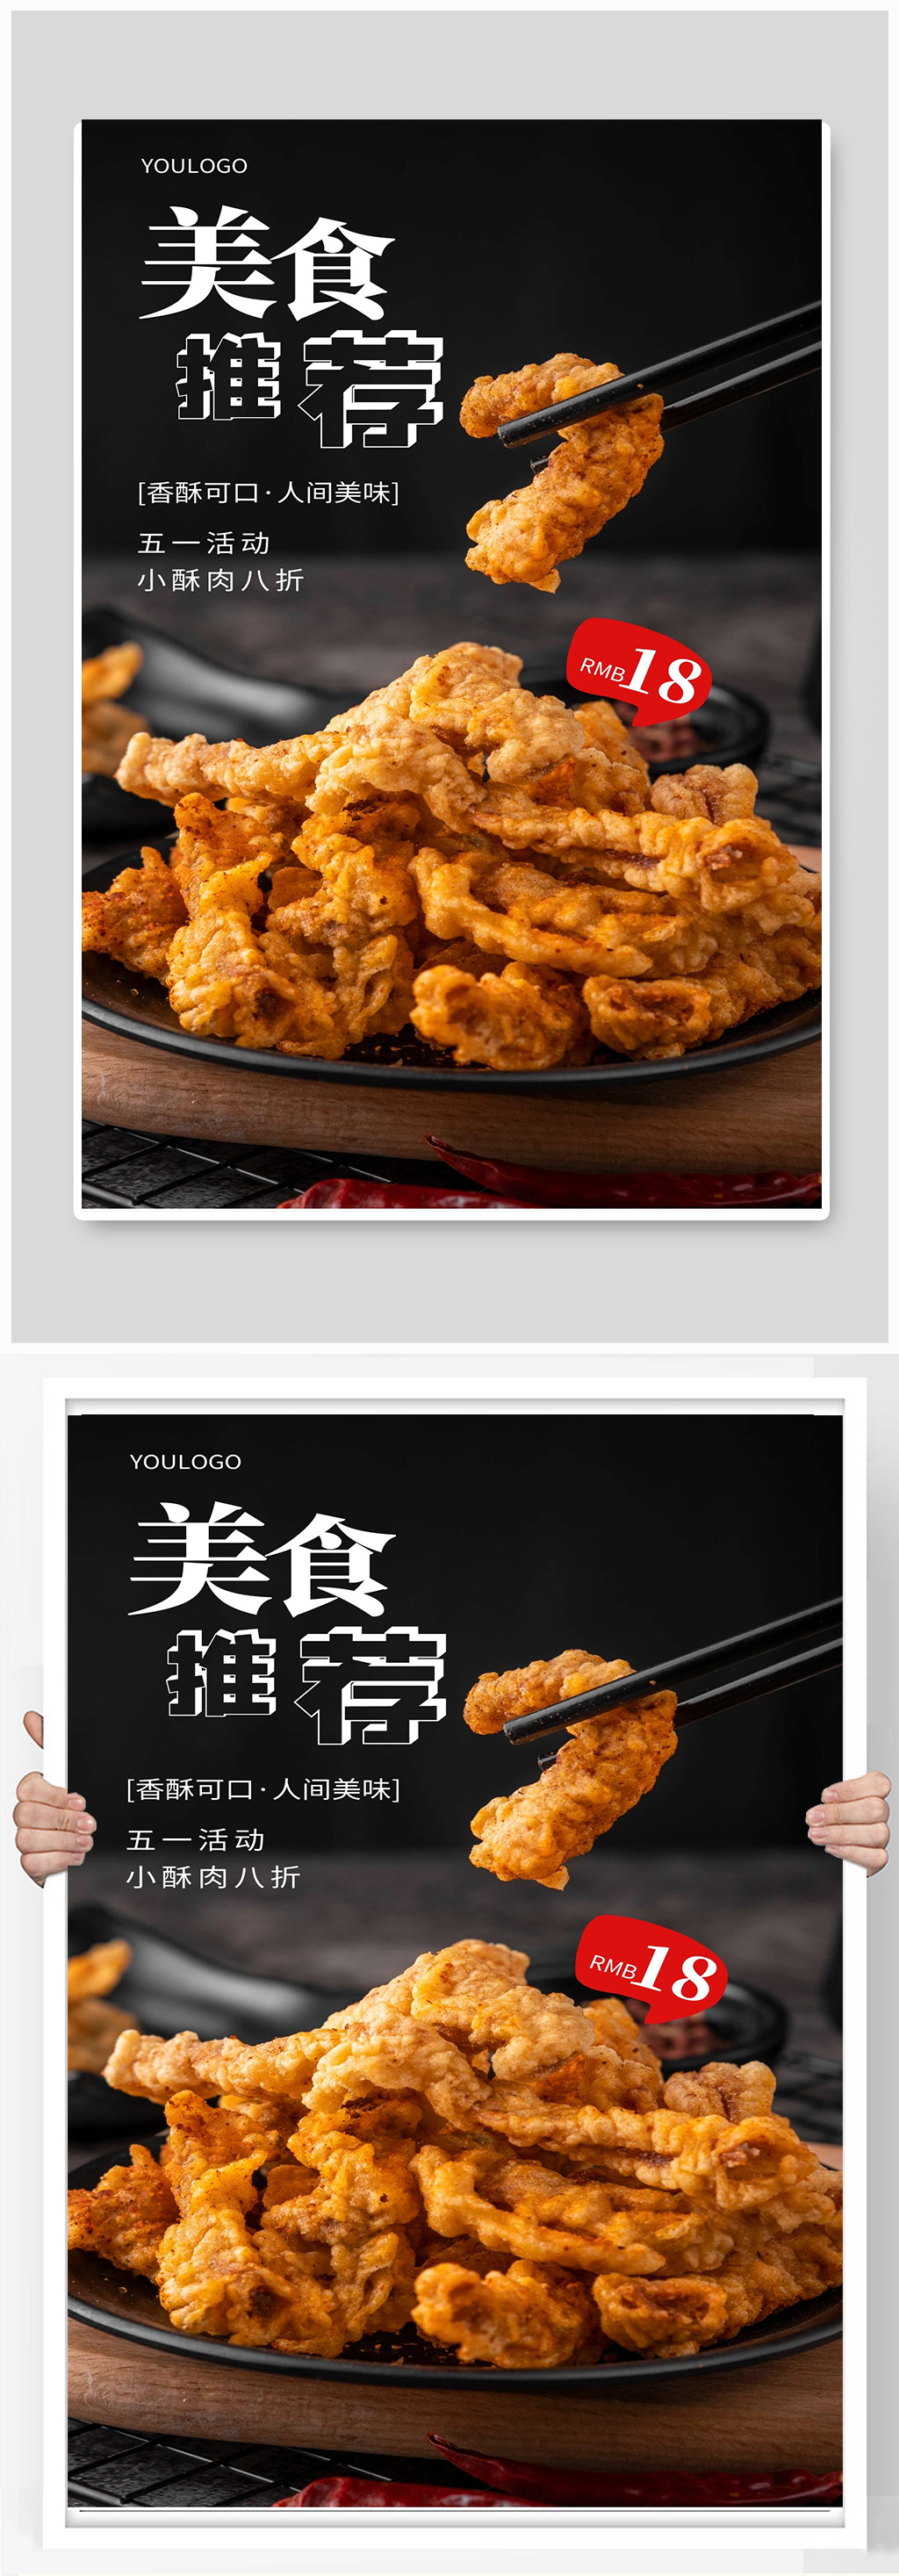 酥肉宣传海报设计美食宣传海报设计